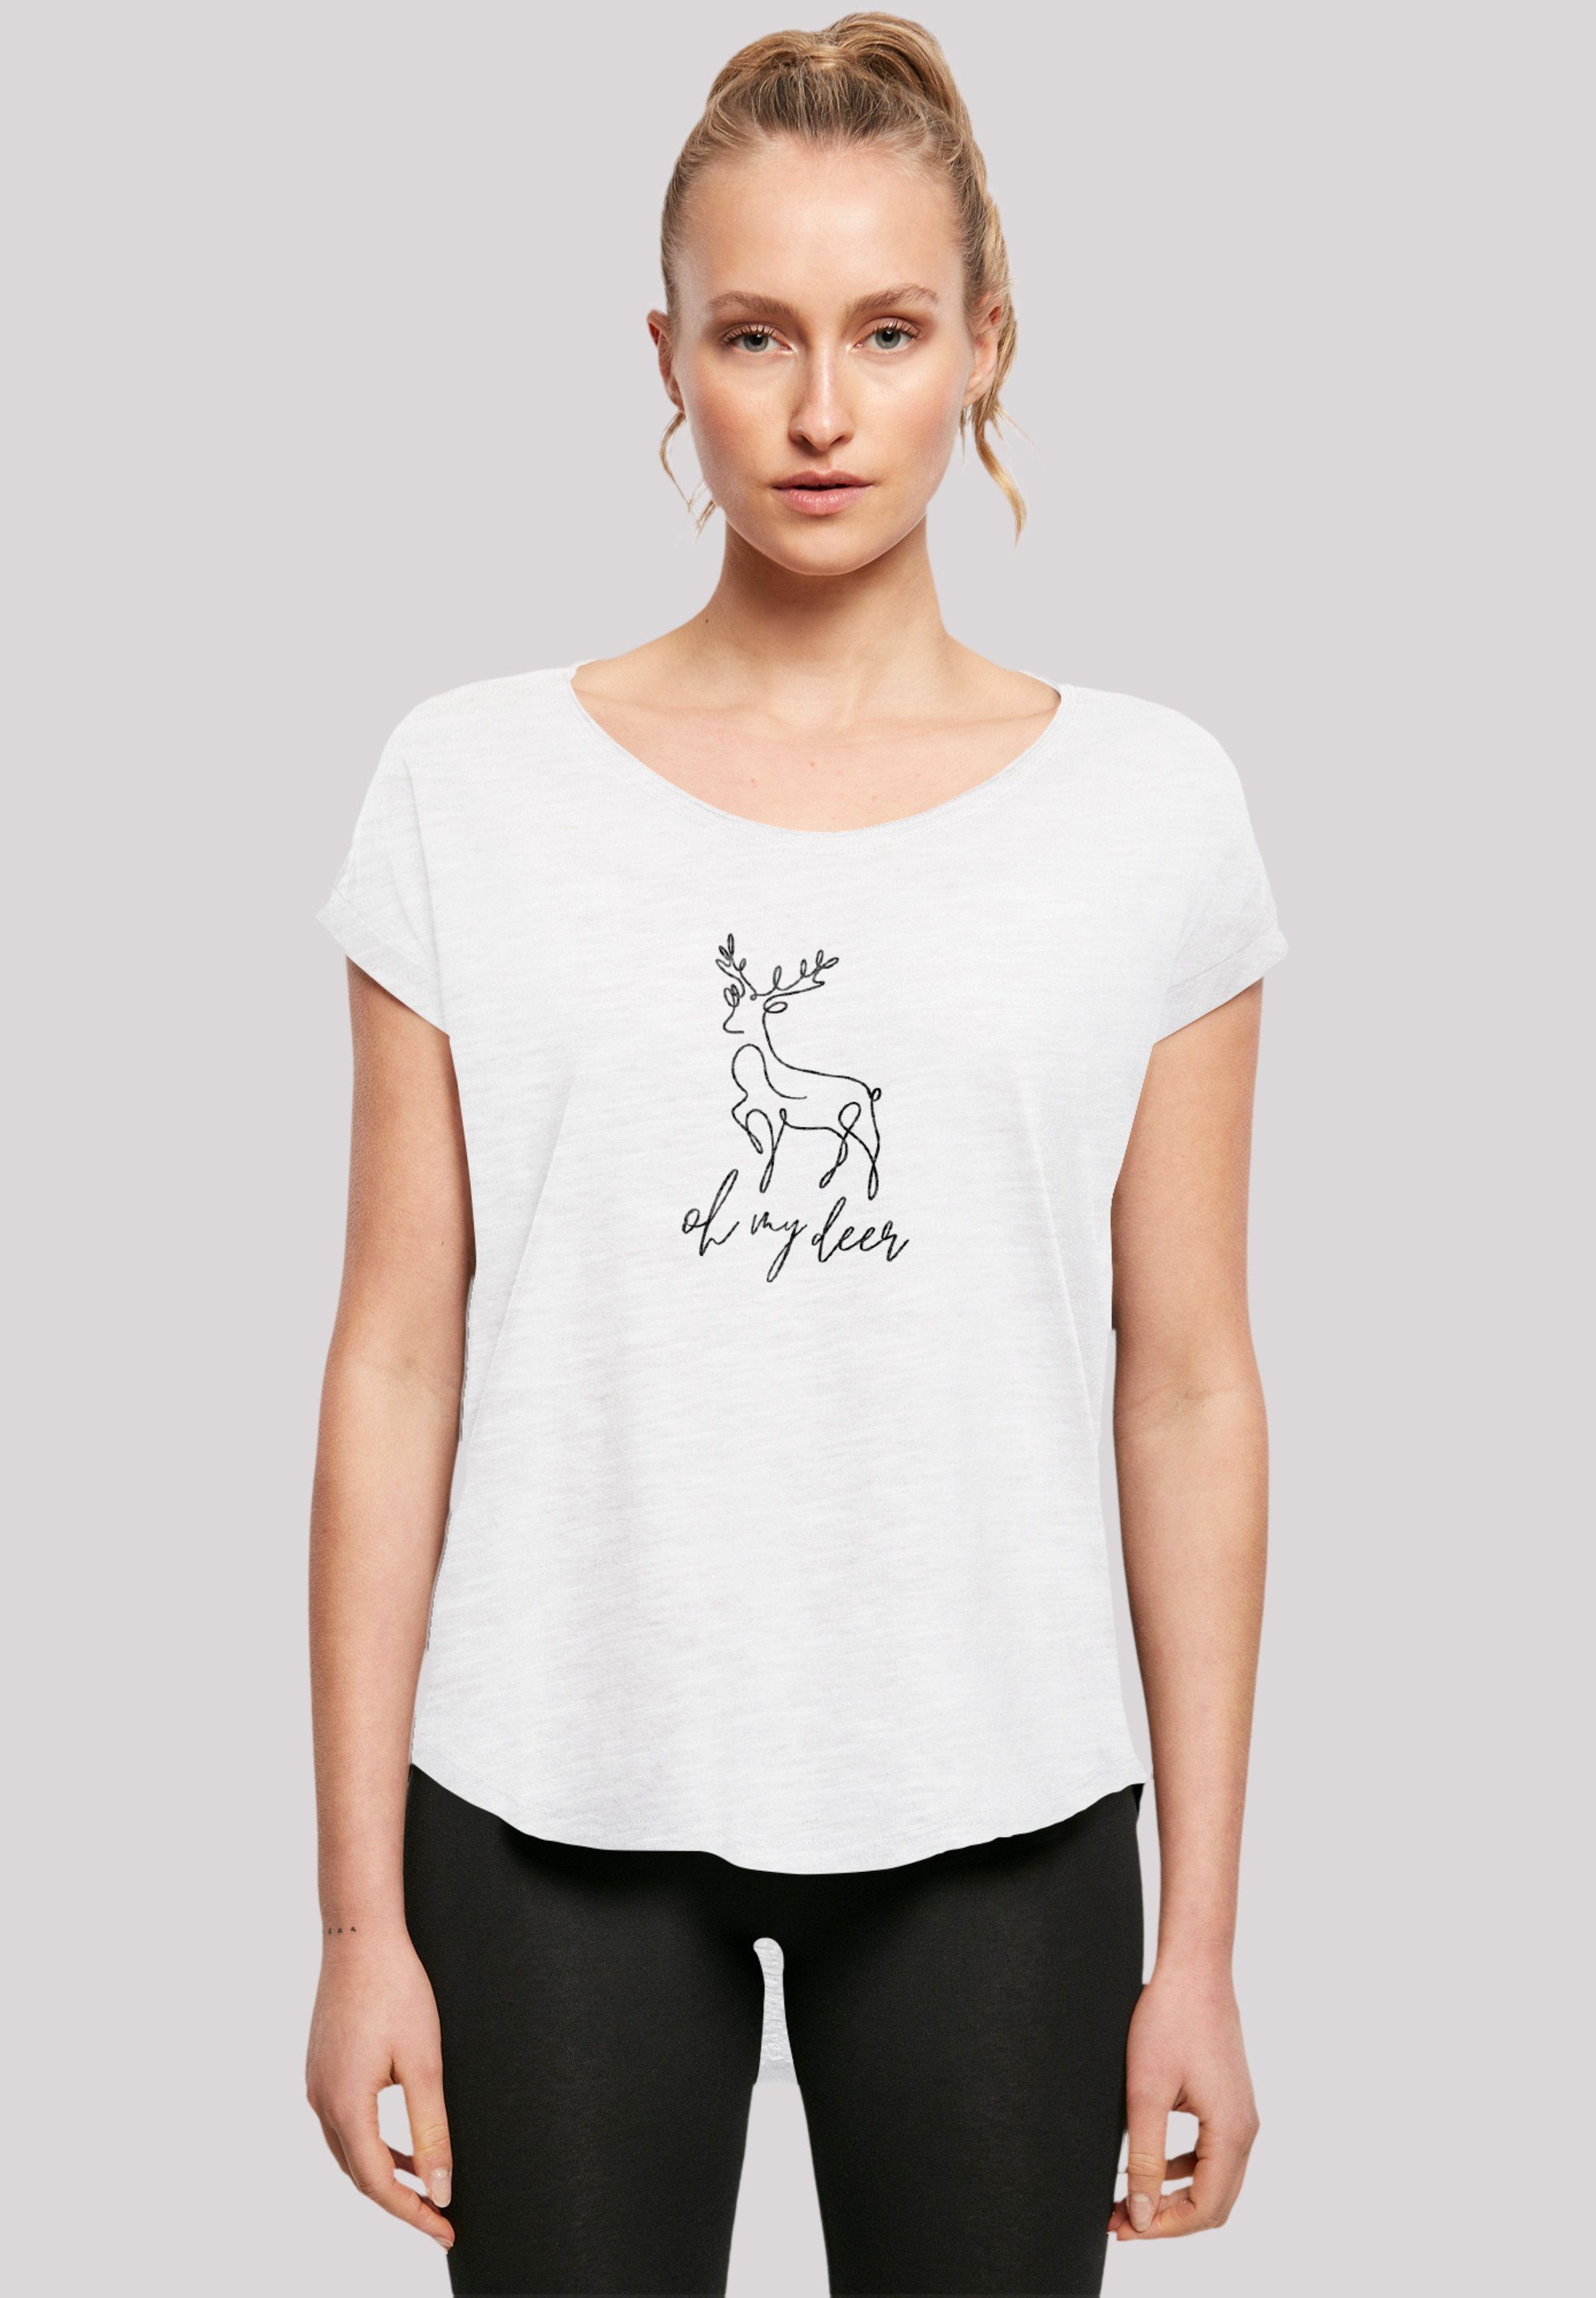 F4NT4STIC T-Shirt Winter Christmas Deer Hinten Band, Premium extra T-Shirt Qualität, Damen geschnittenes lang Rock-Musik